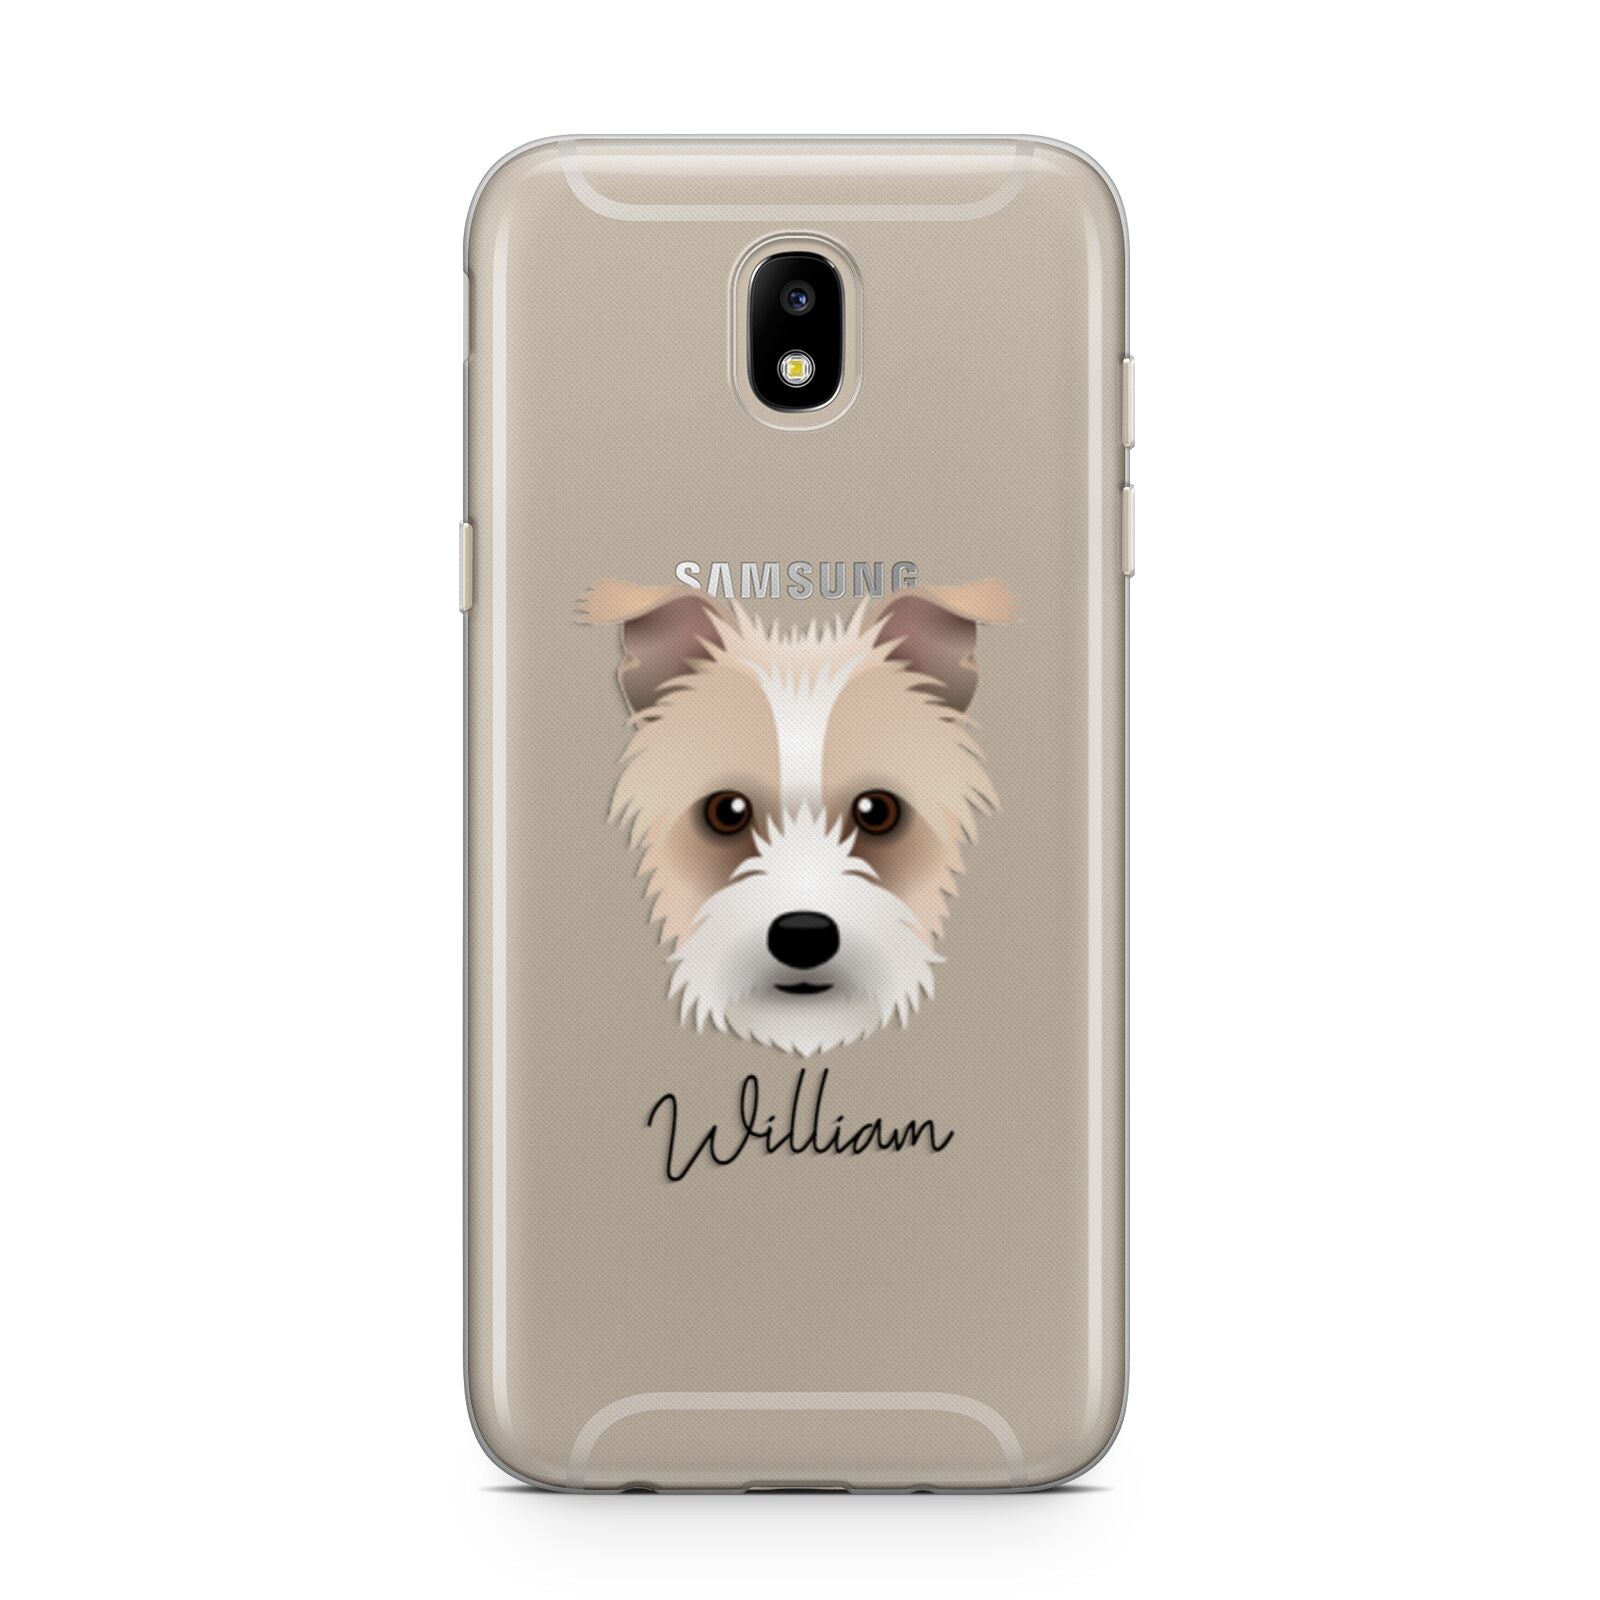 Sporting Lucas Terrier Personalised Samsung J5 2017 Case